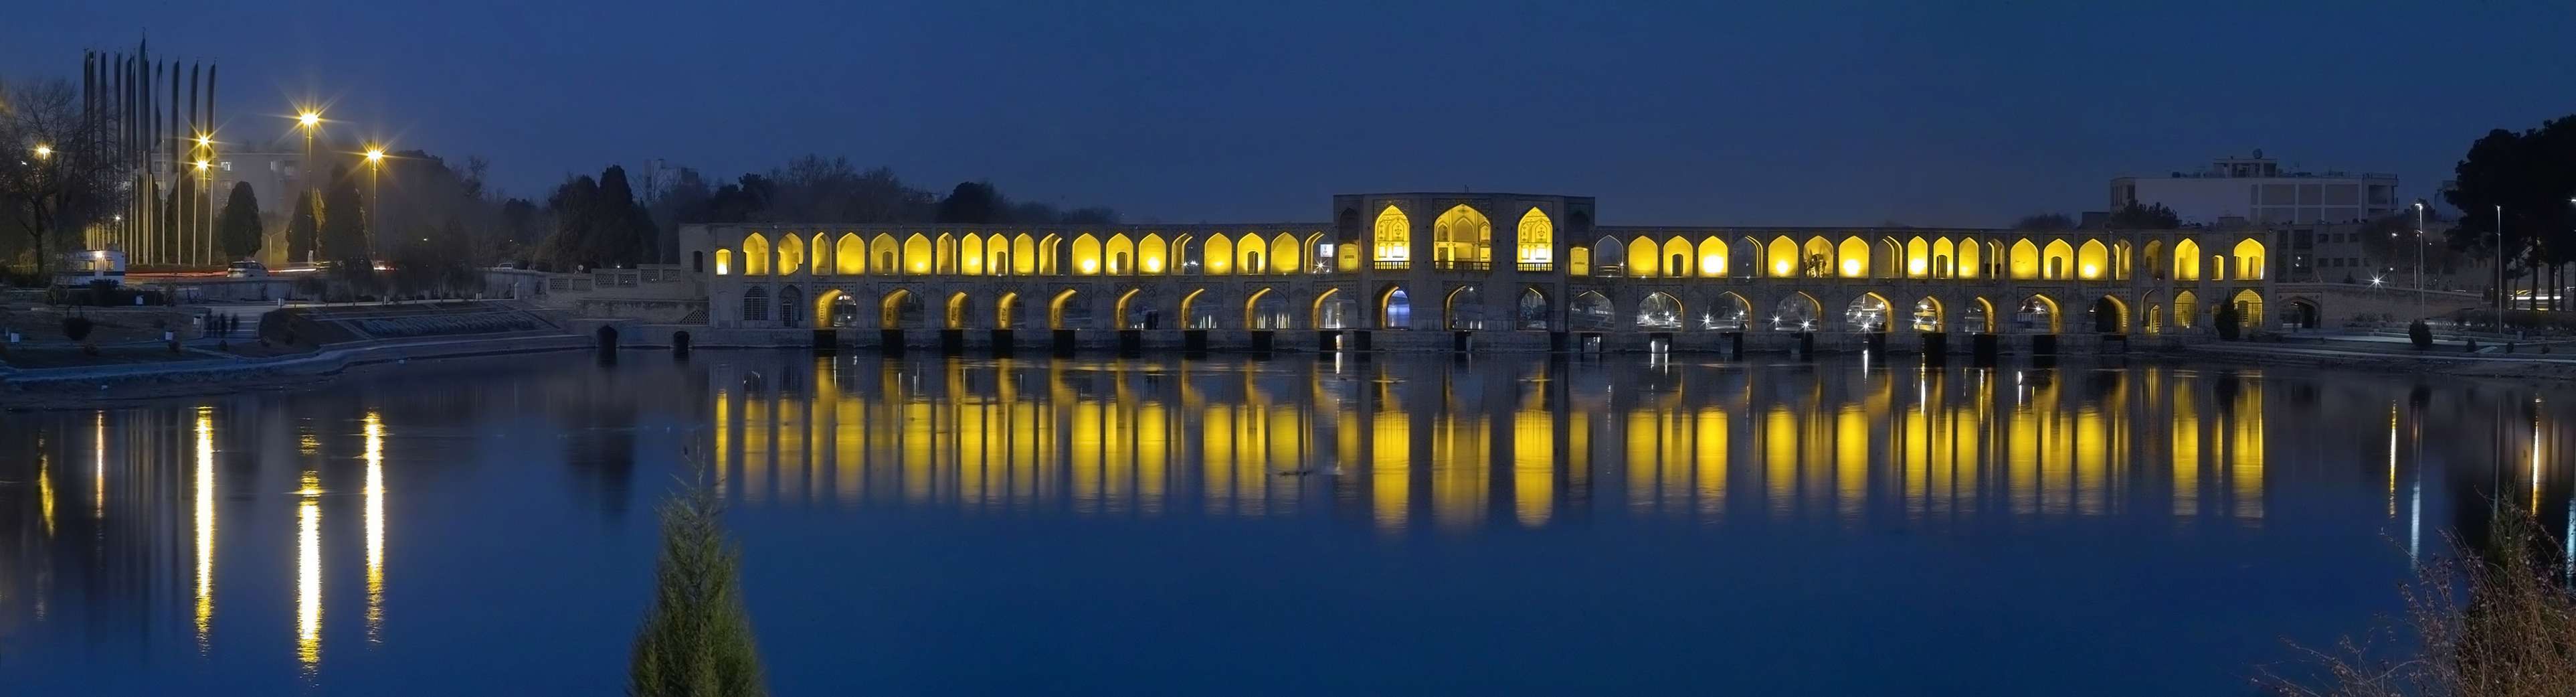 عکس های با کیفیت بالا از اصفهان